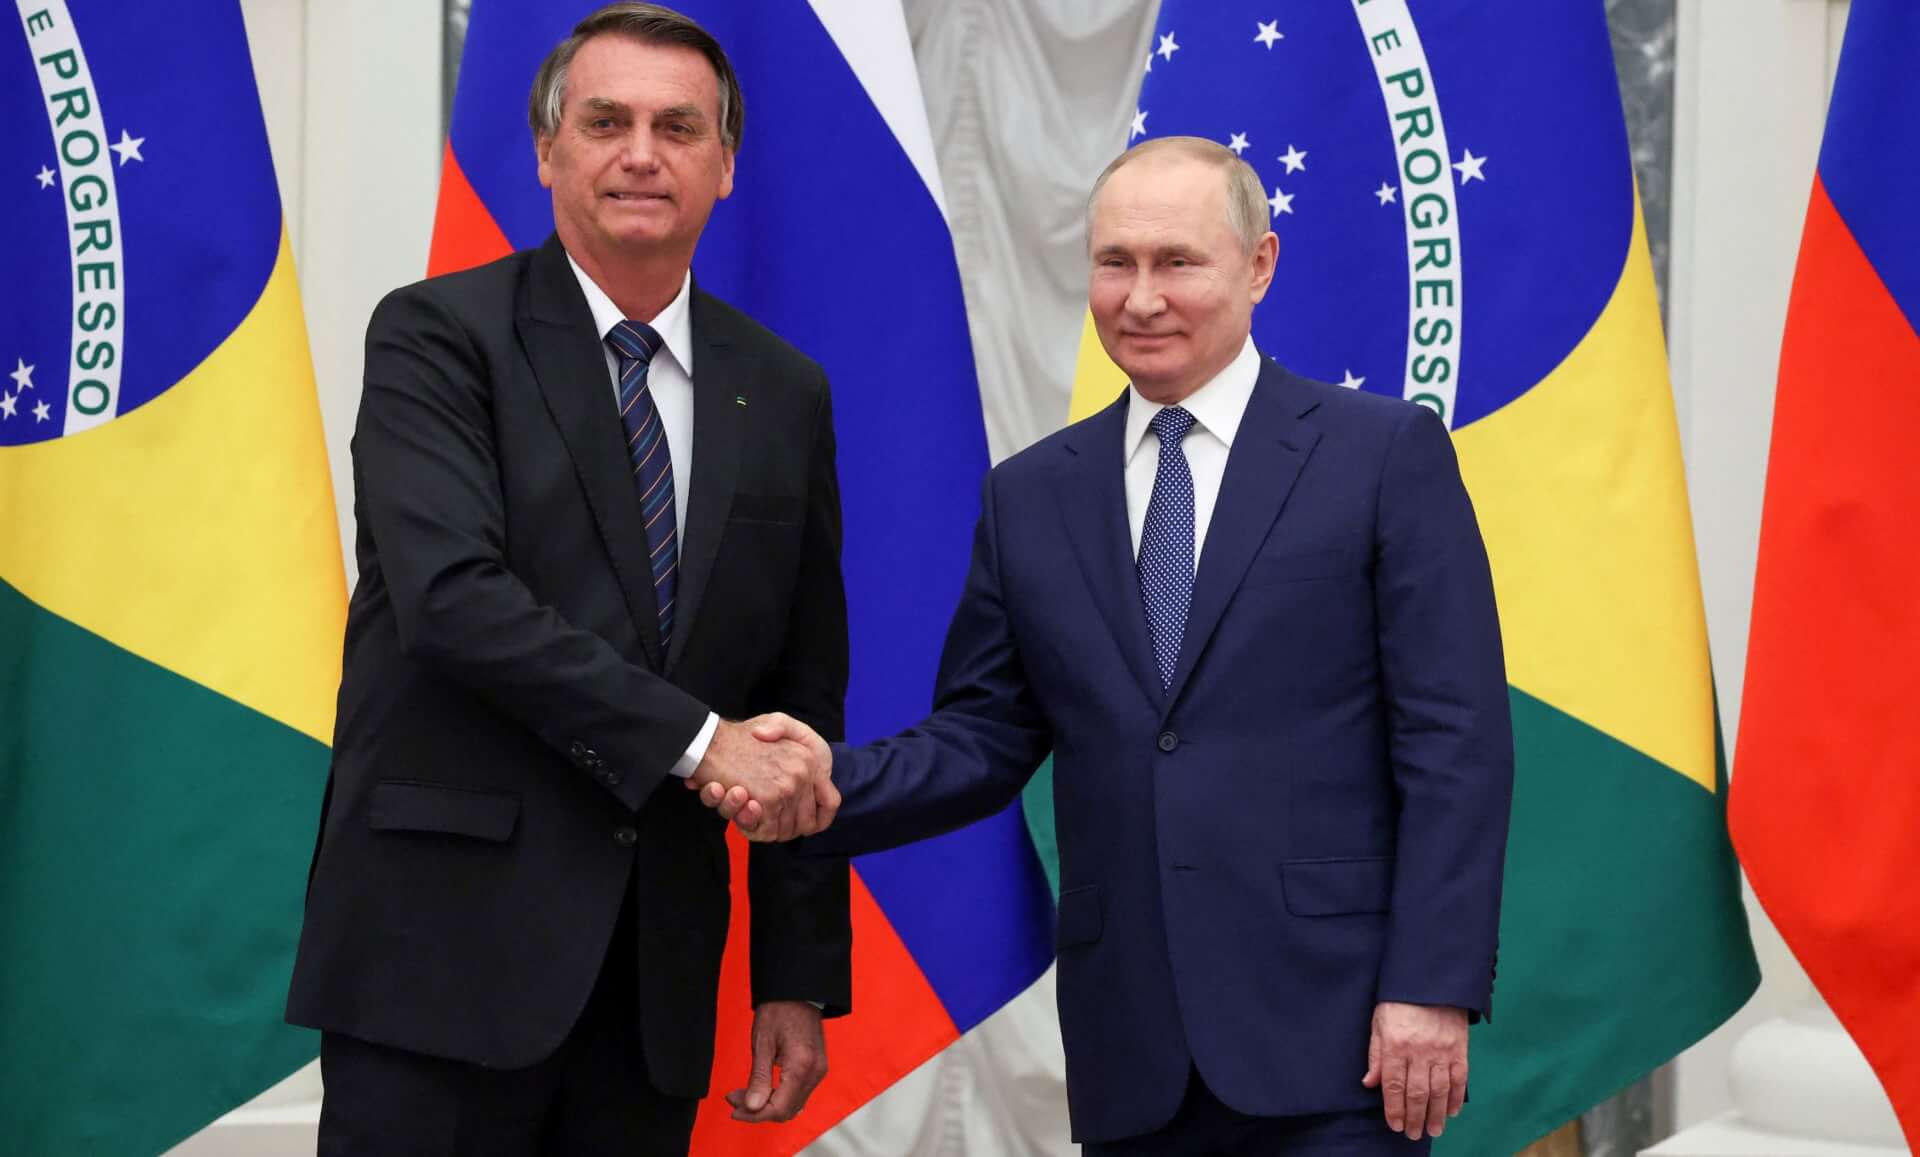 Bolsonaro, Putin Hold “Constructive Talks” Despite US Opposition, Avoid Discussing Ukraine